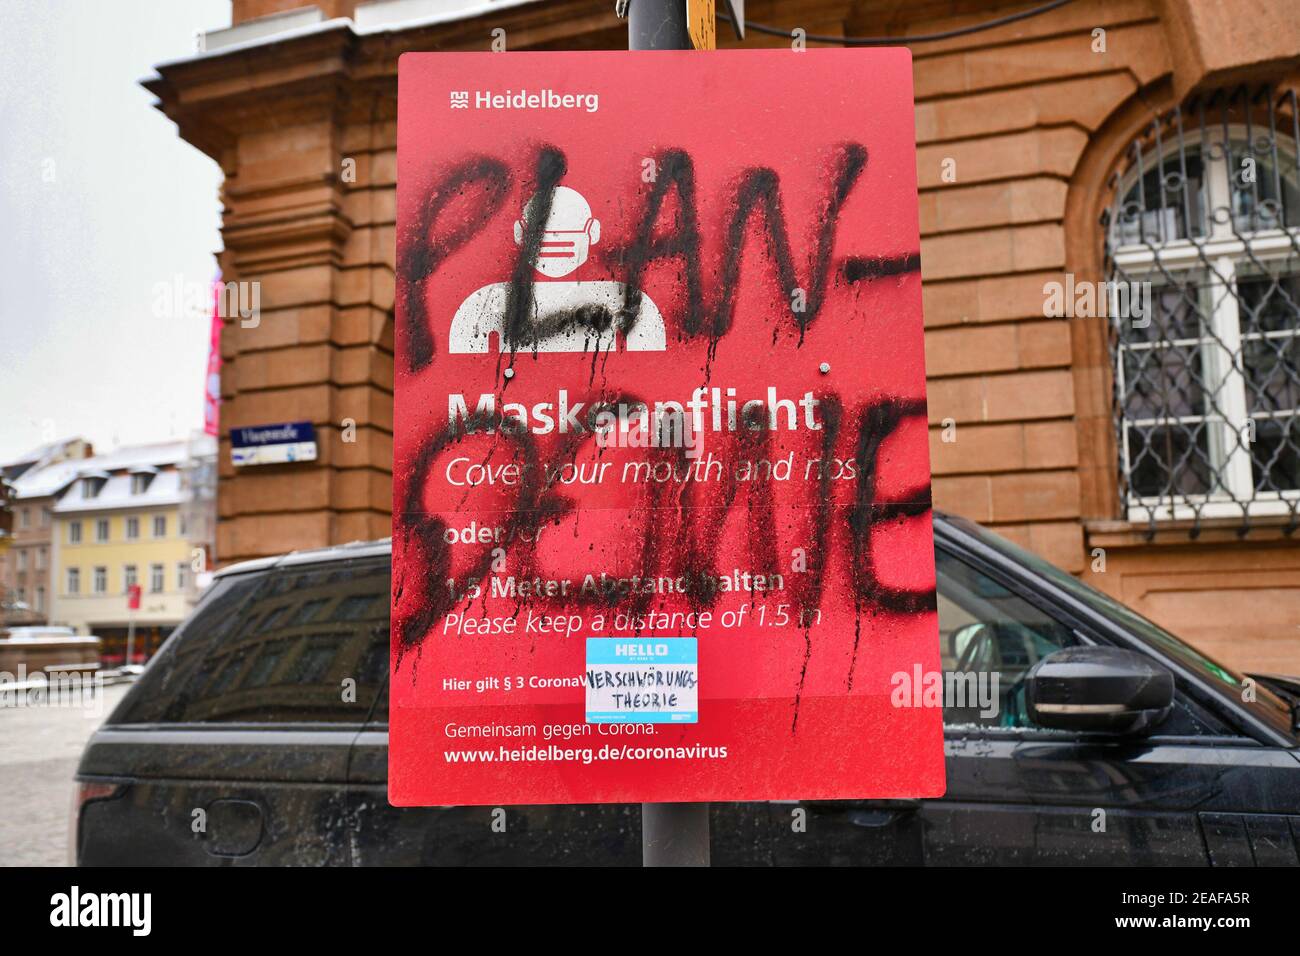 Heidelberg, Allemagne - février 2021: Mot 'Plpandémique' en allemand écrit sur des signes pour le masque facial et l'exigence de distance par les théoriciens de la conspiration dans p Banque D'Images